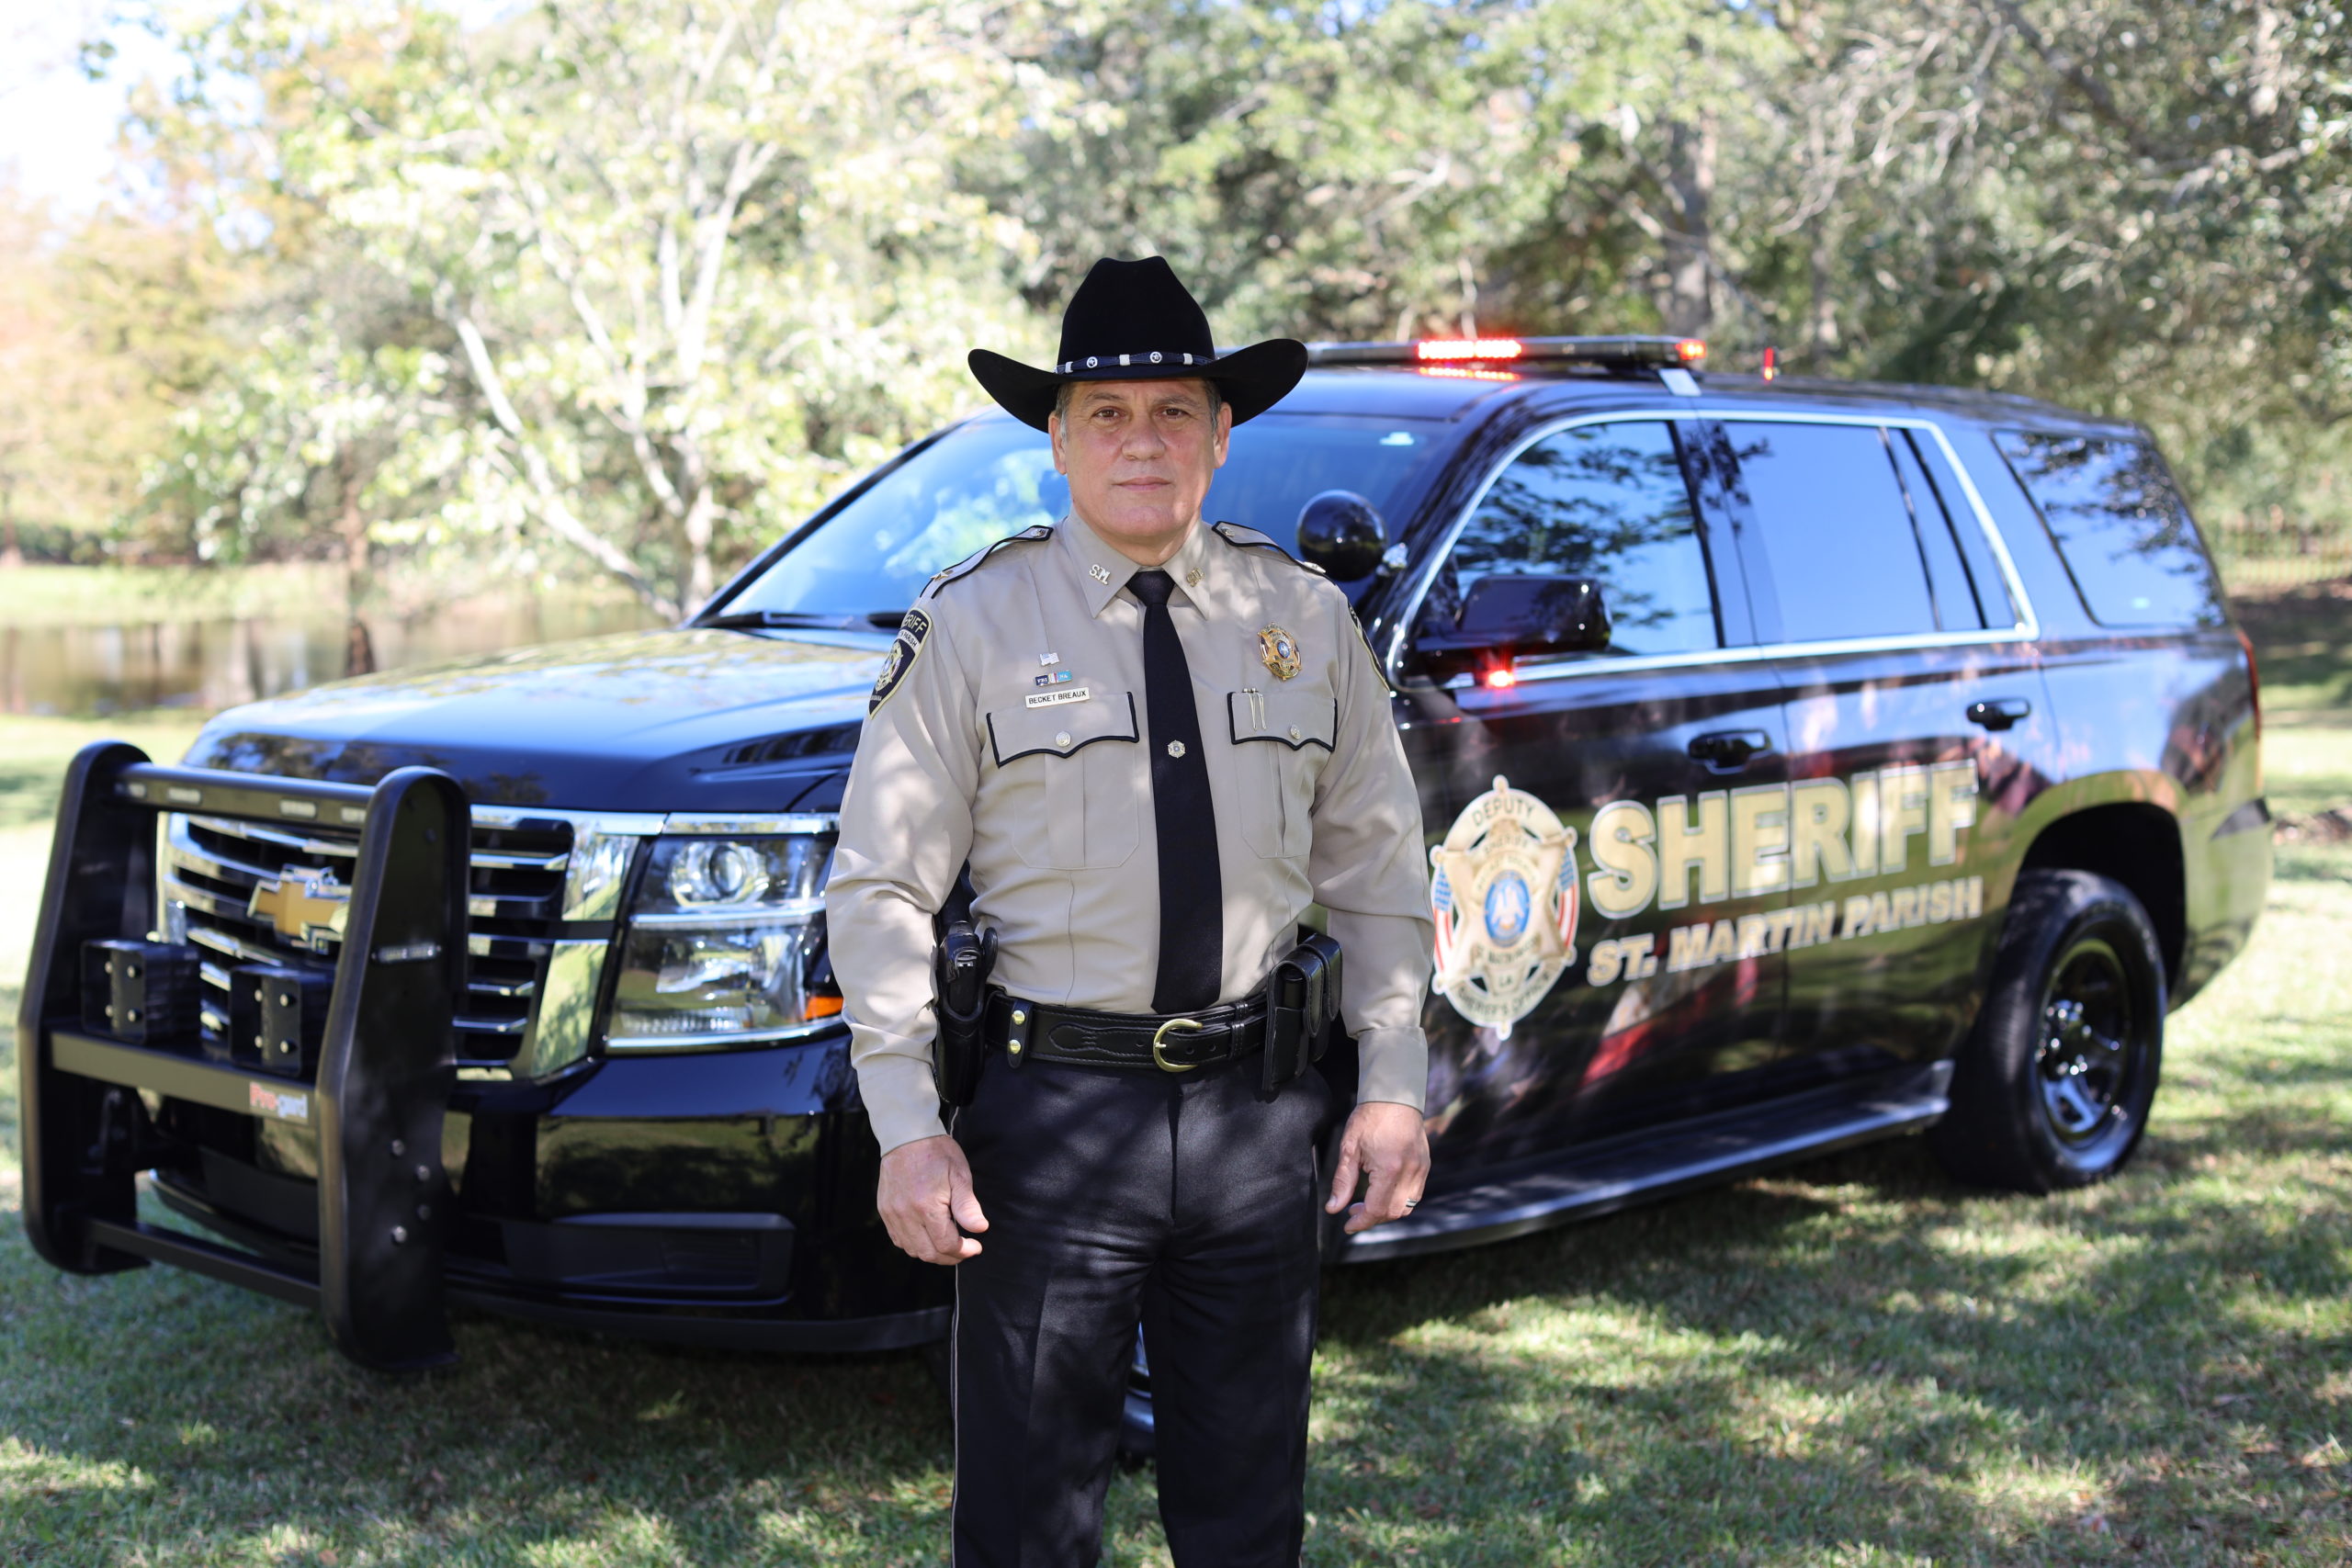 Sheriff Breaux